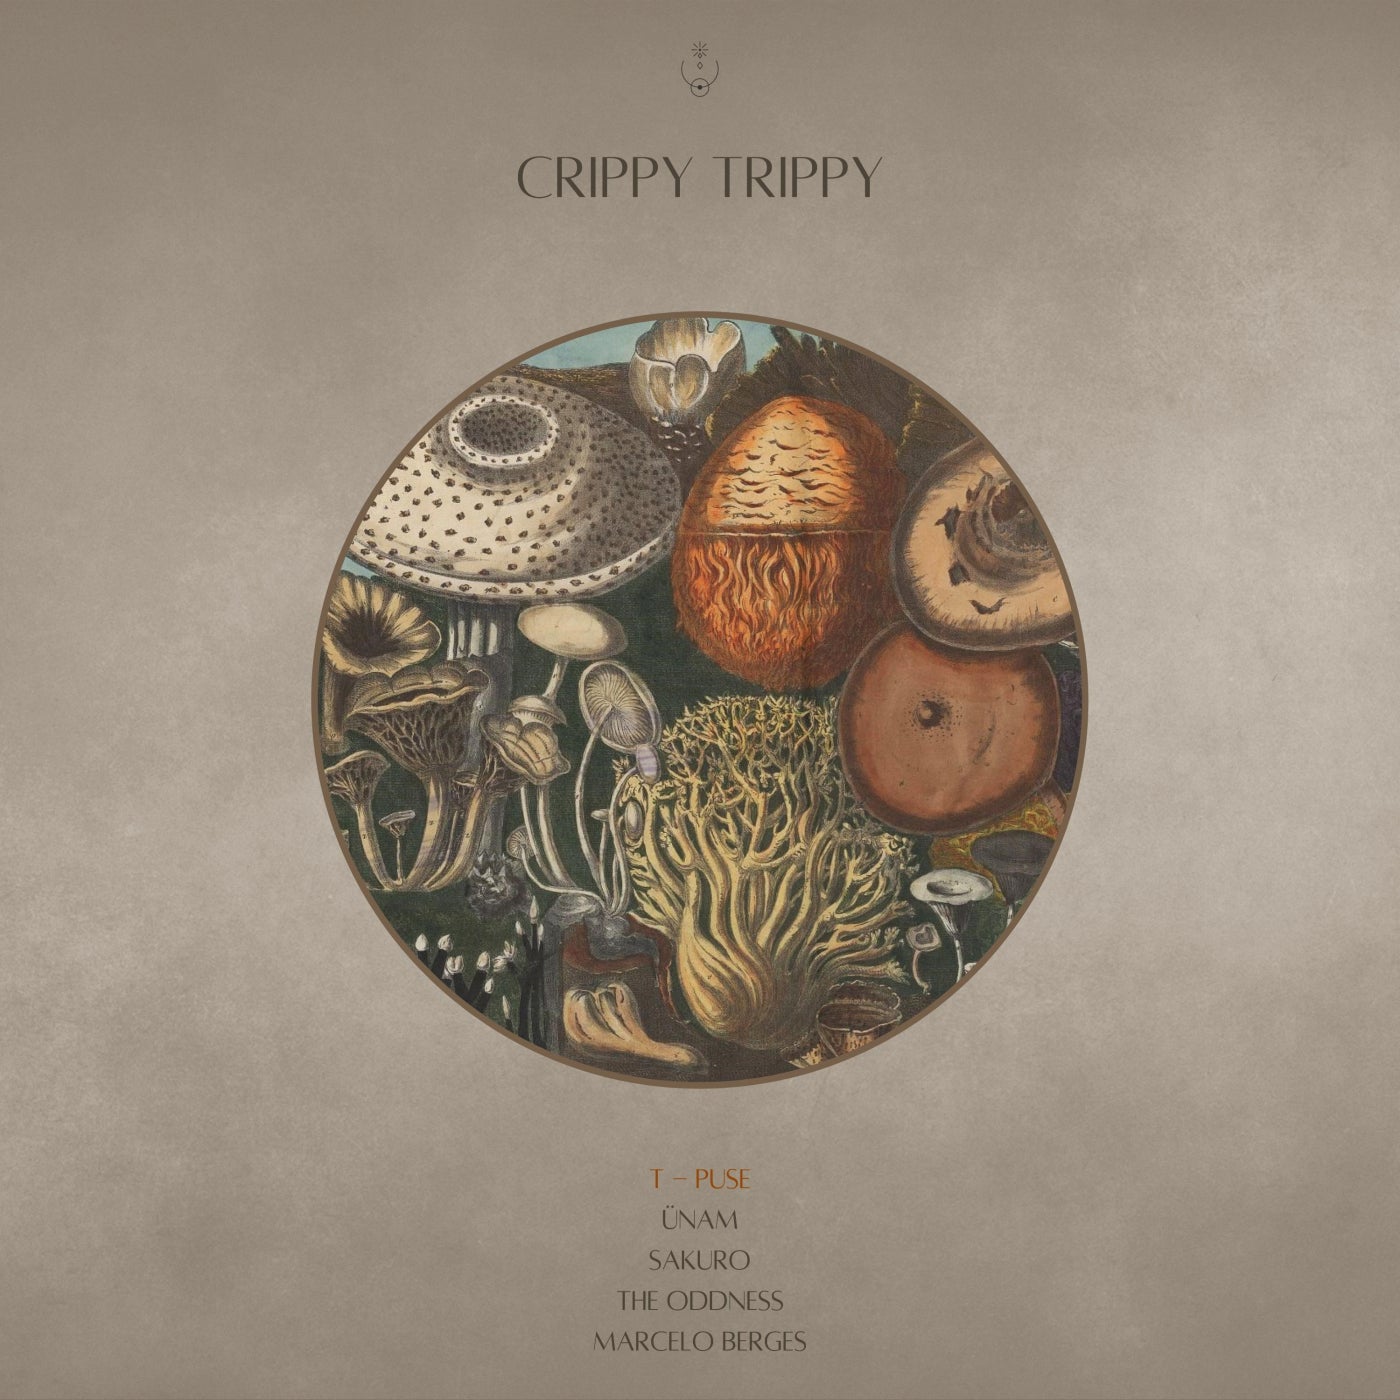 Crippy Trippy